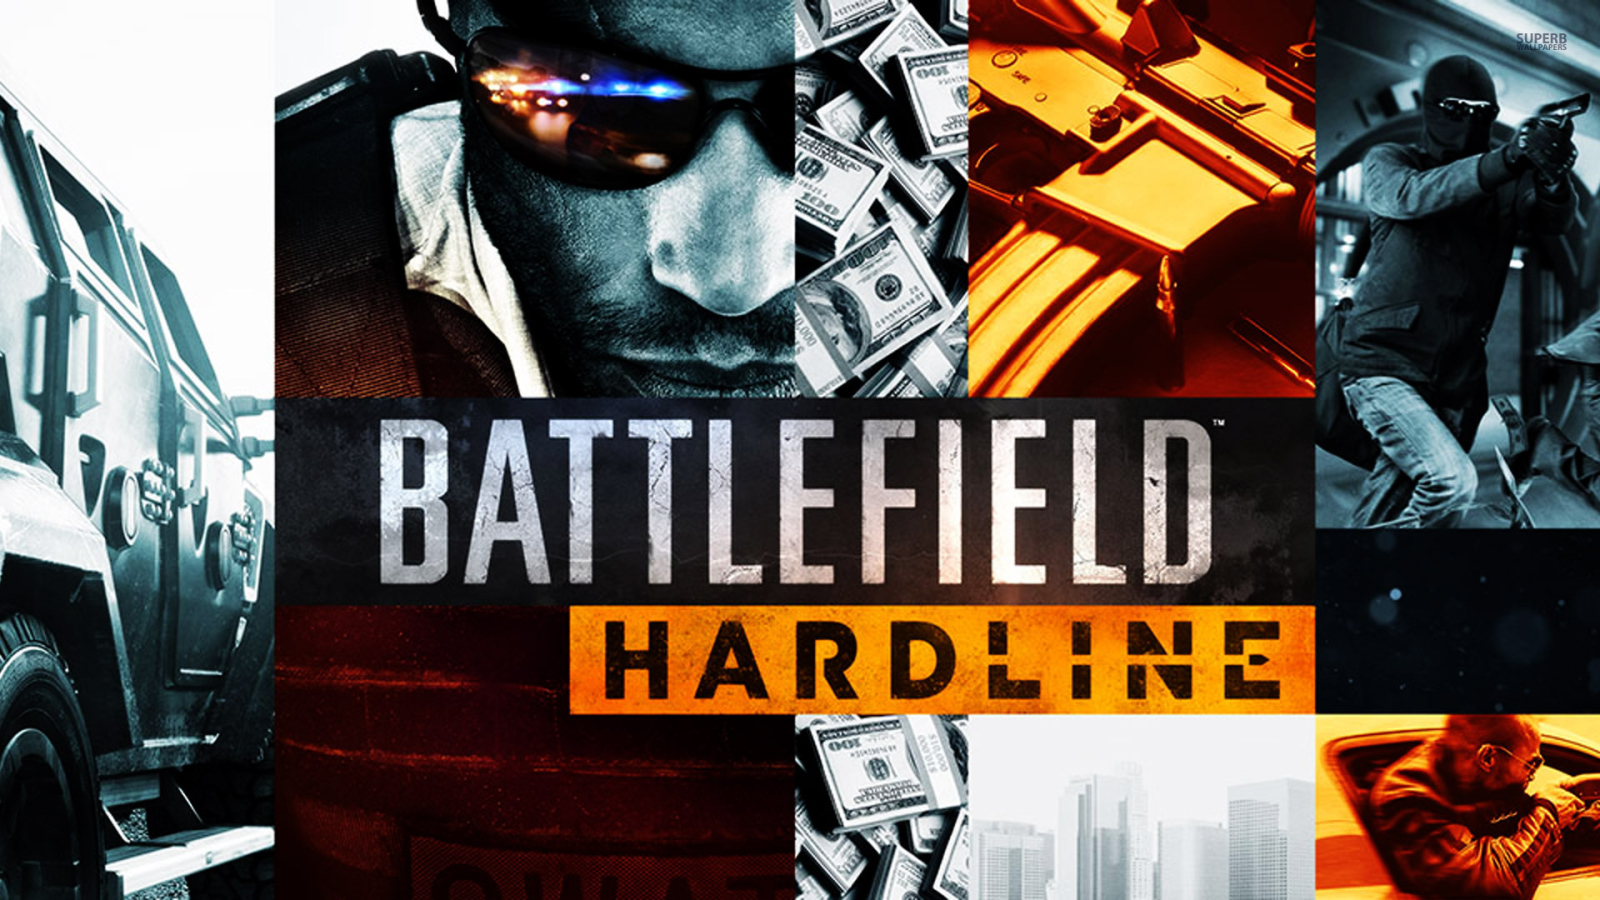 Премьера новой игры Battlefield Hardline